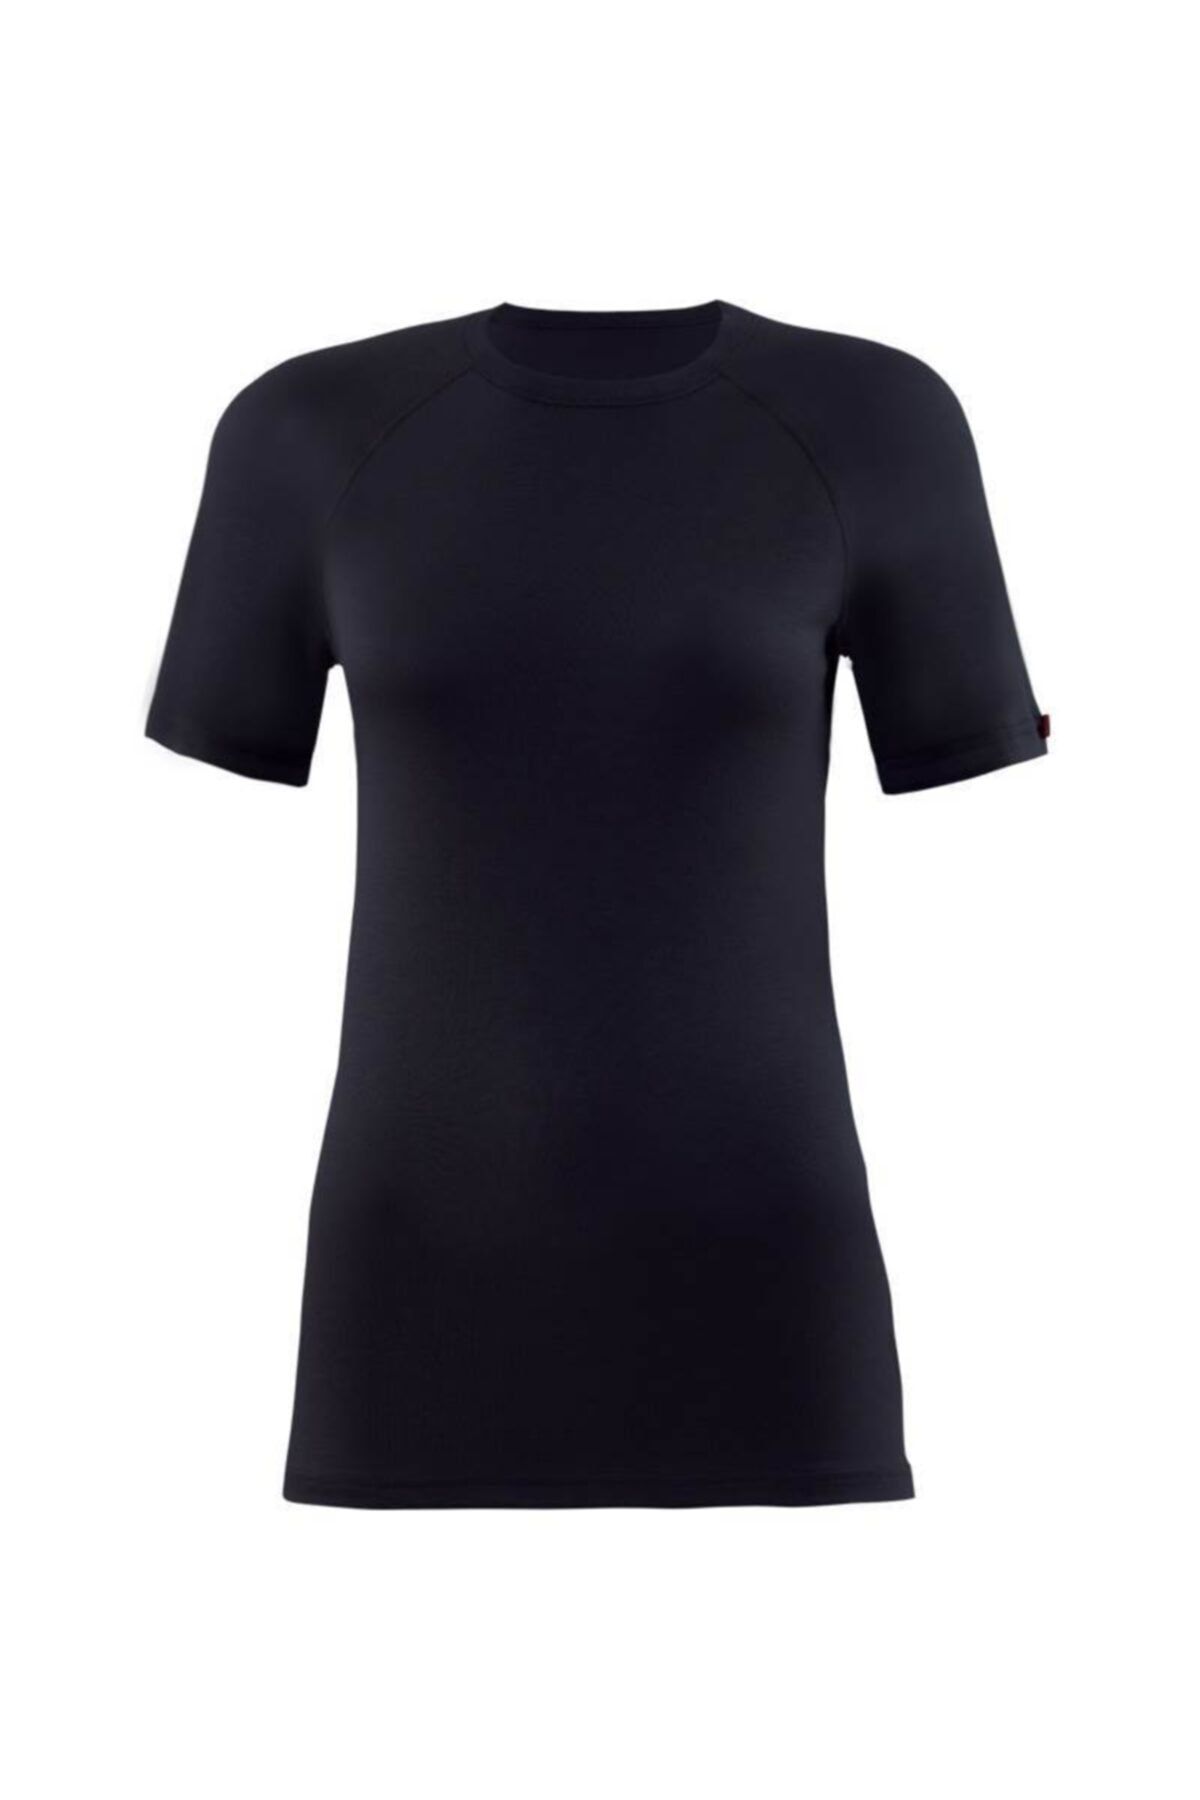 Blackspade Unisex Termal Giyim & Içlik 9258 - Termal Kısa Kollu Siyah Tişört